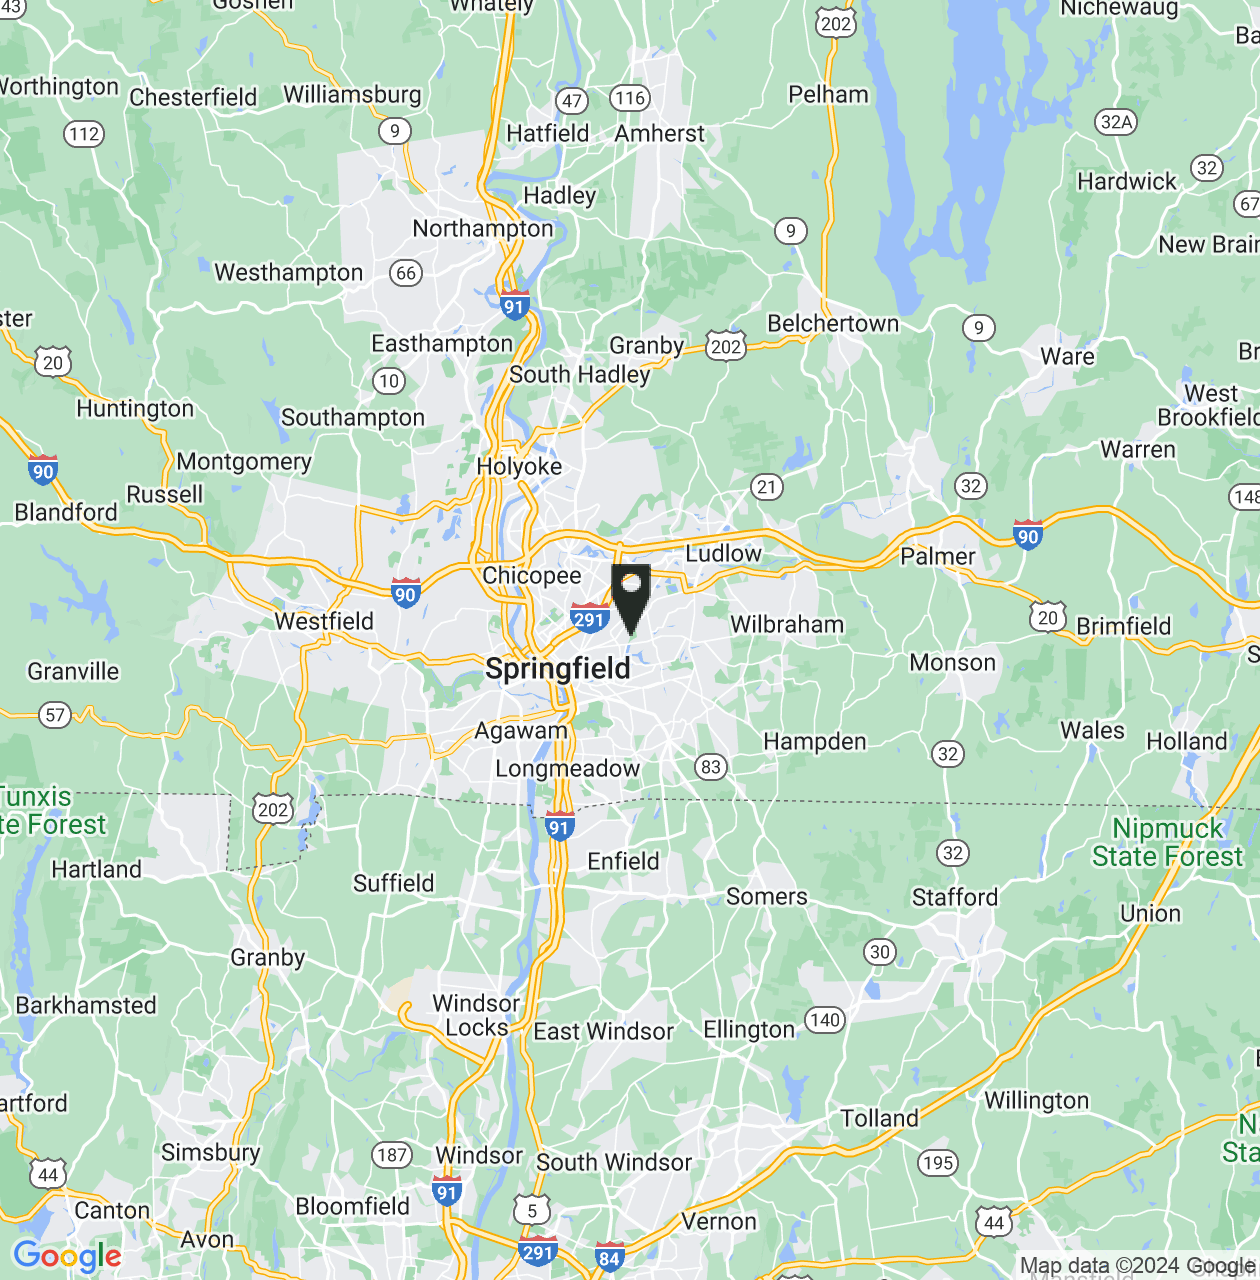 Map showing Hampden County, Massachusetts